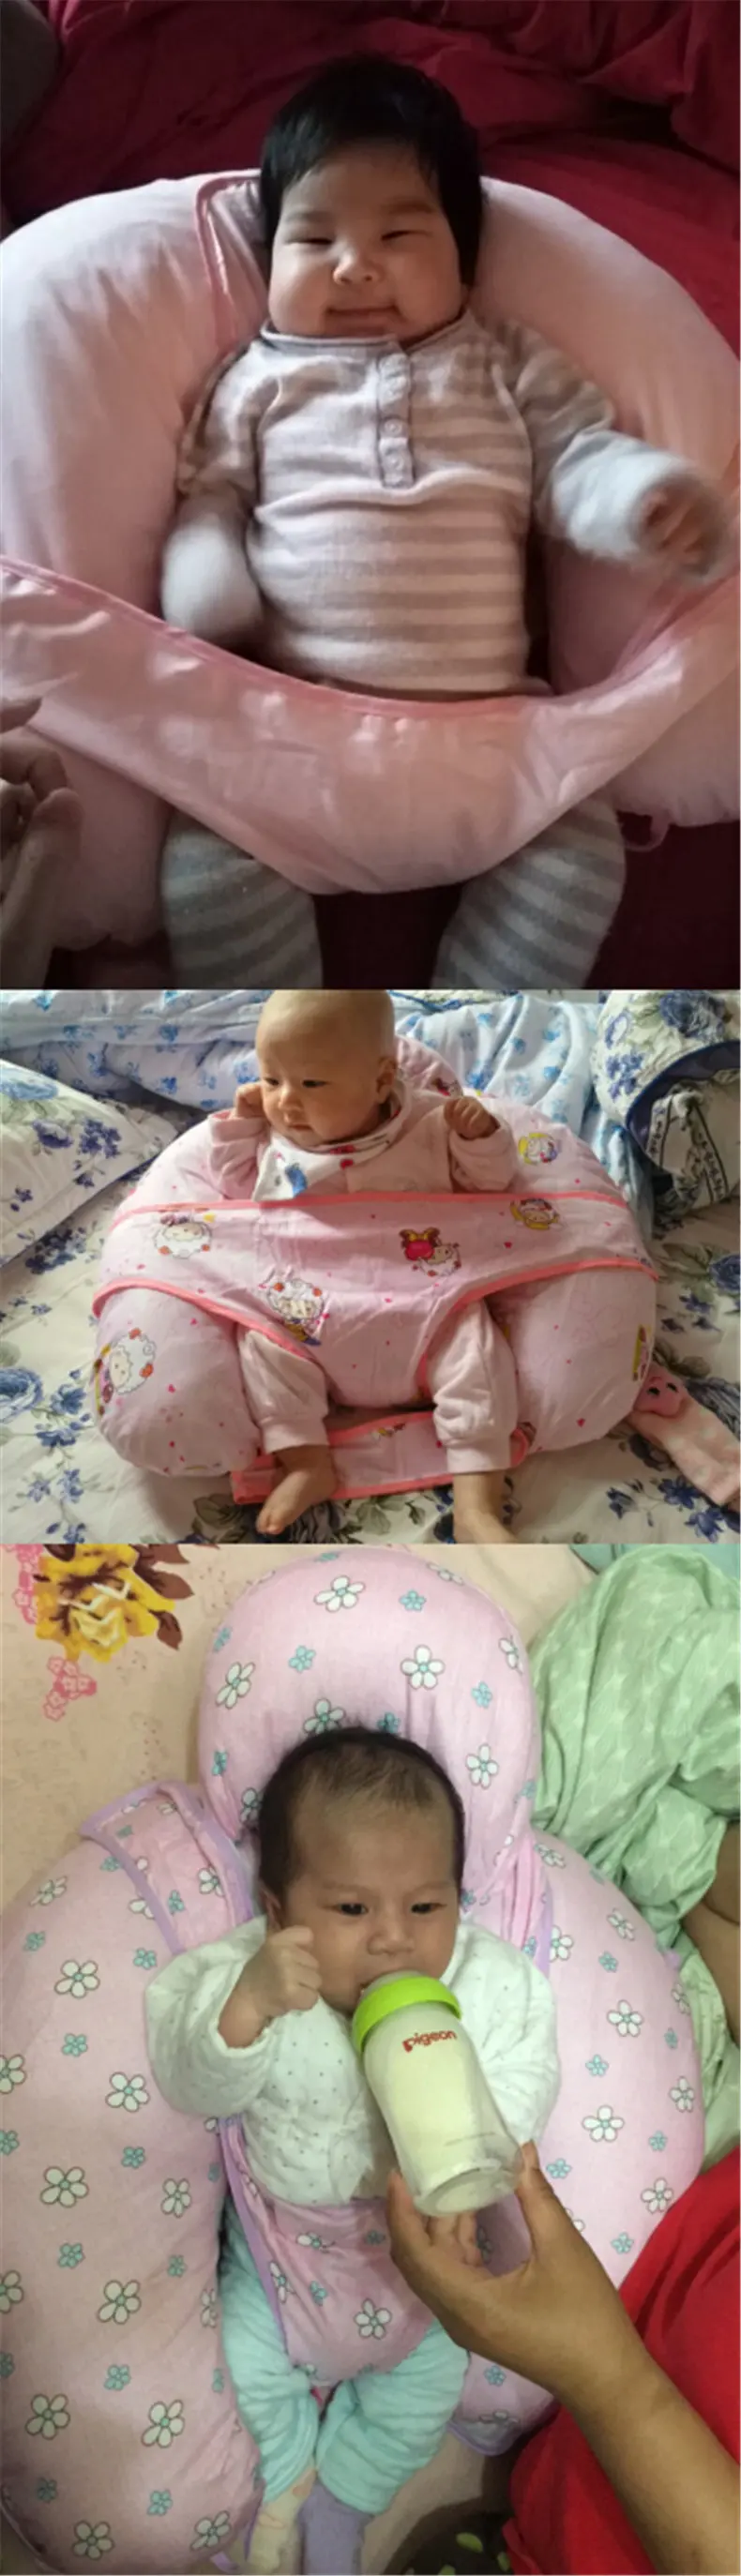 60*53 см мягкая подушка для кормления новорожденного ребенка Удобная хлопковая Подушка для кормления грудью принадлежности для кормящих